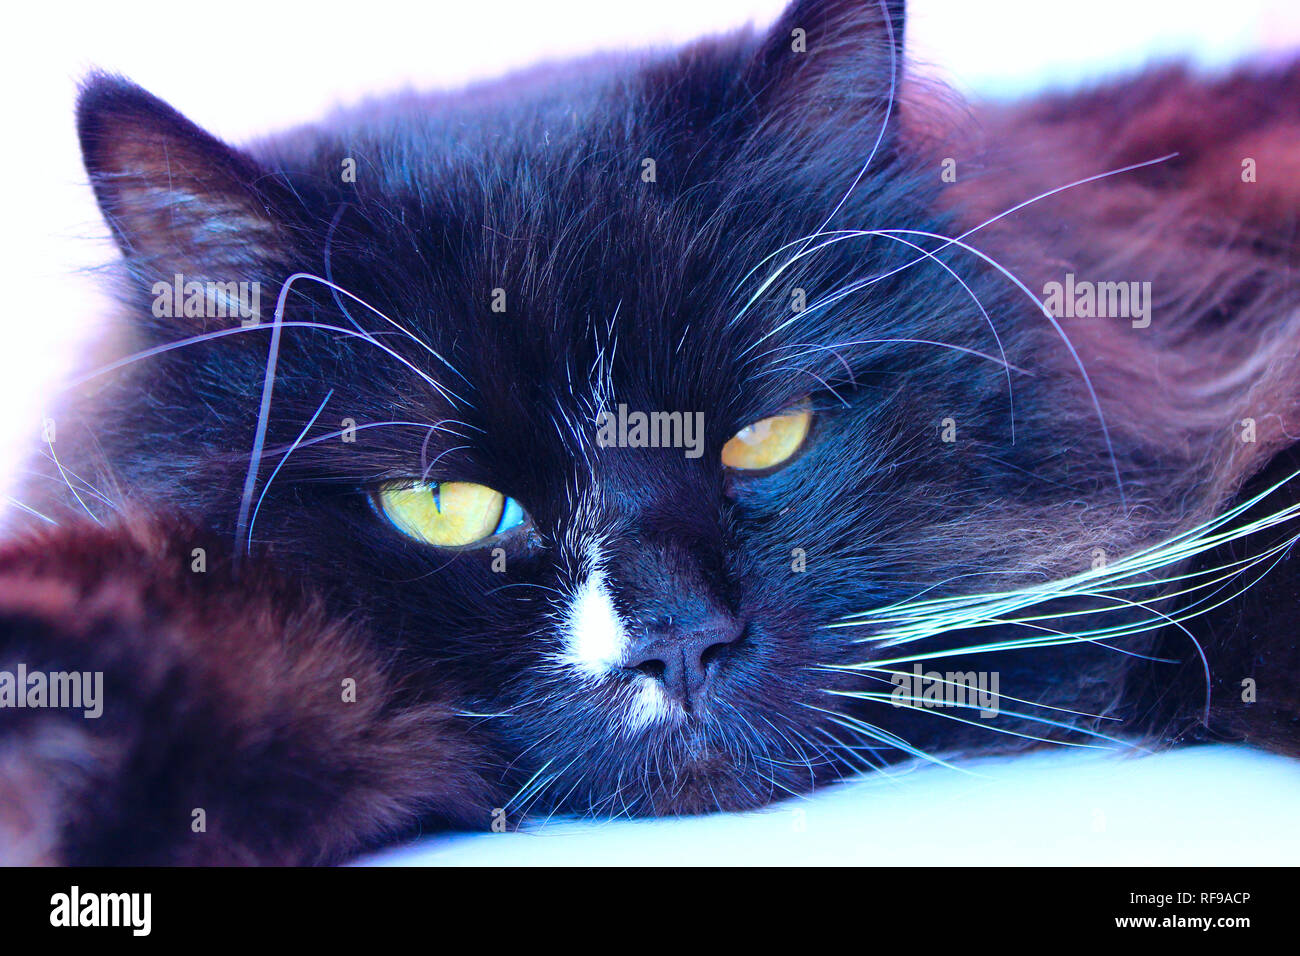 El hocico del gato. Close-up. Hocico de gato negro. Lazy pet. Animal doméstico Foto de stock